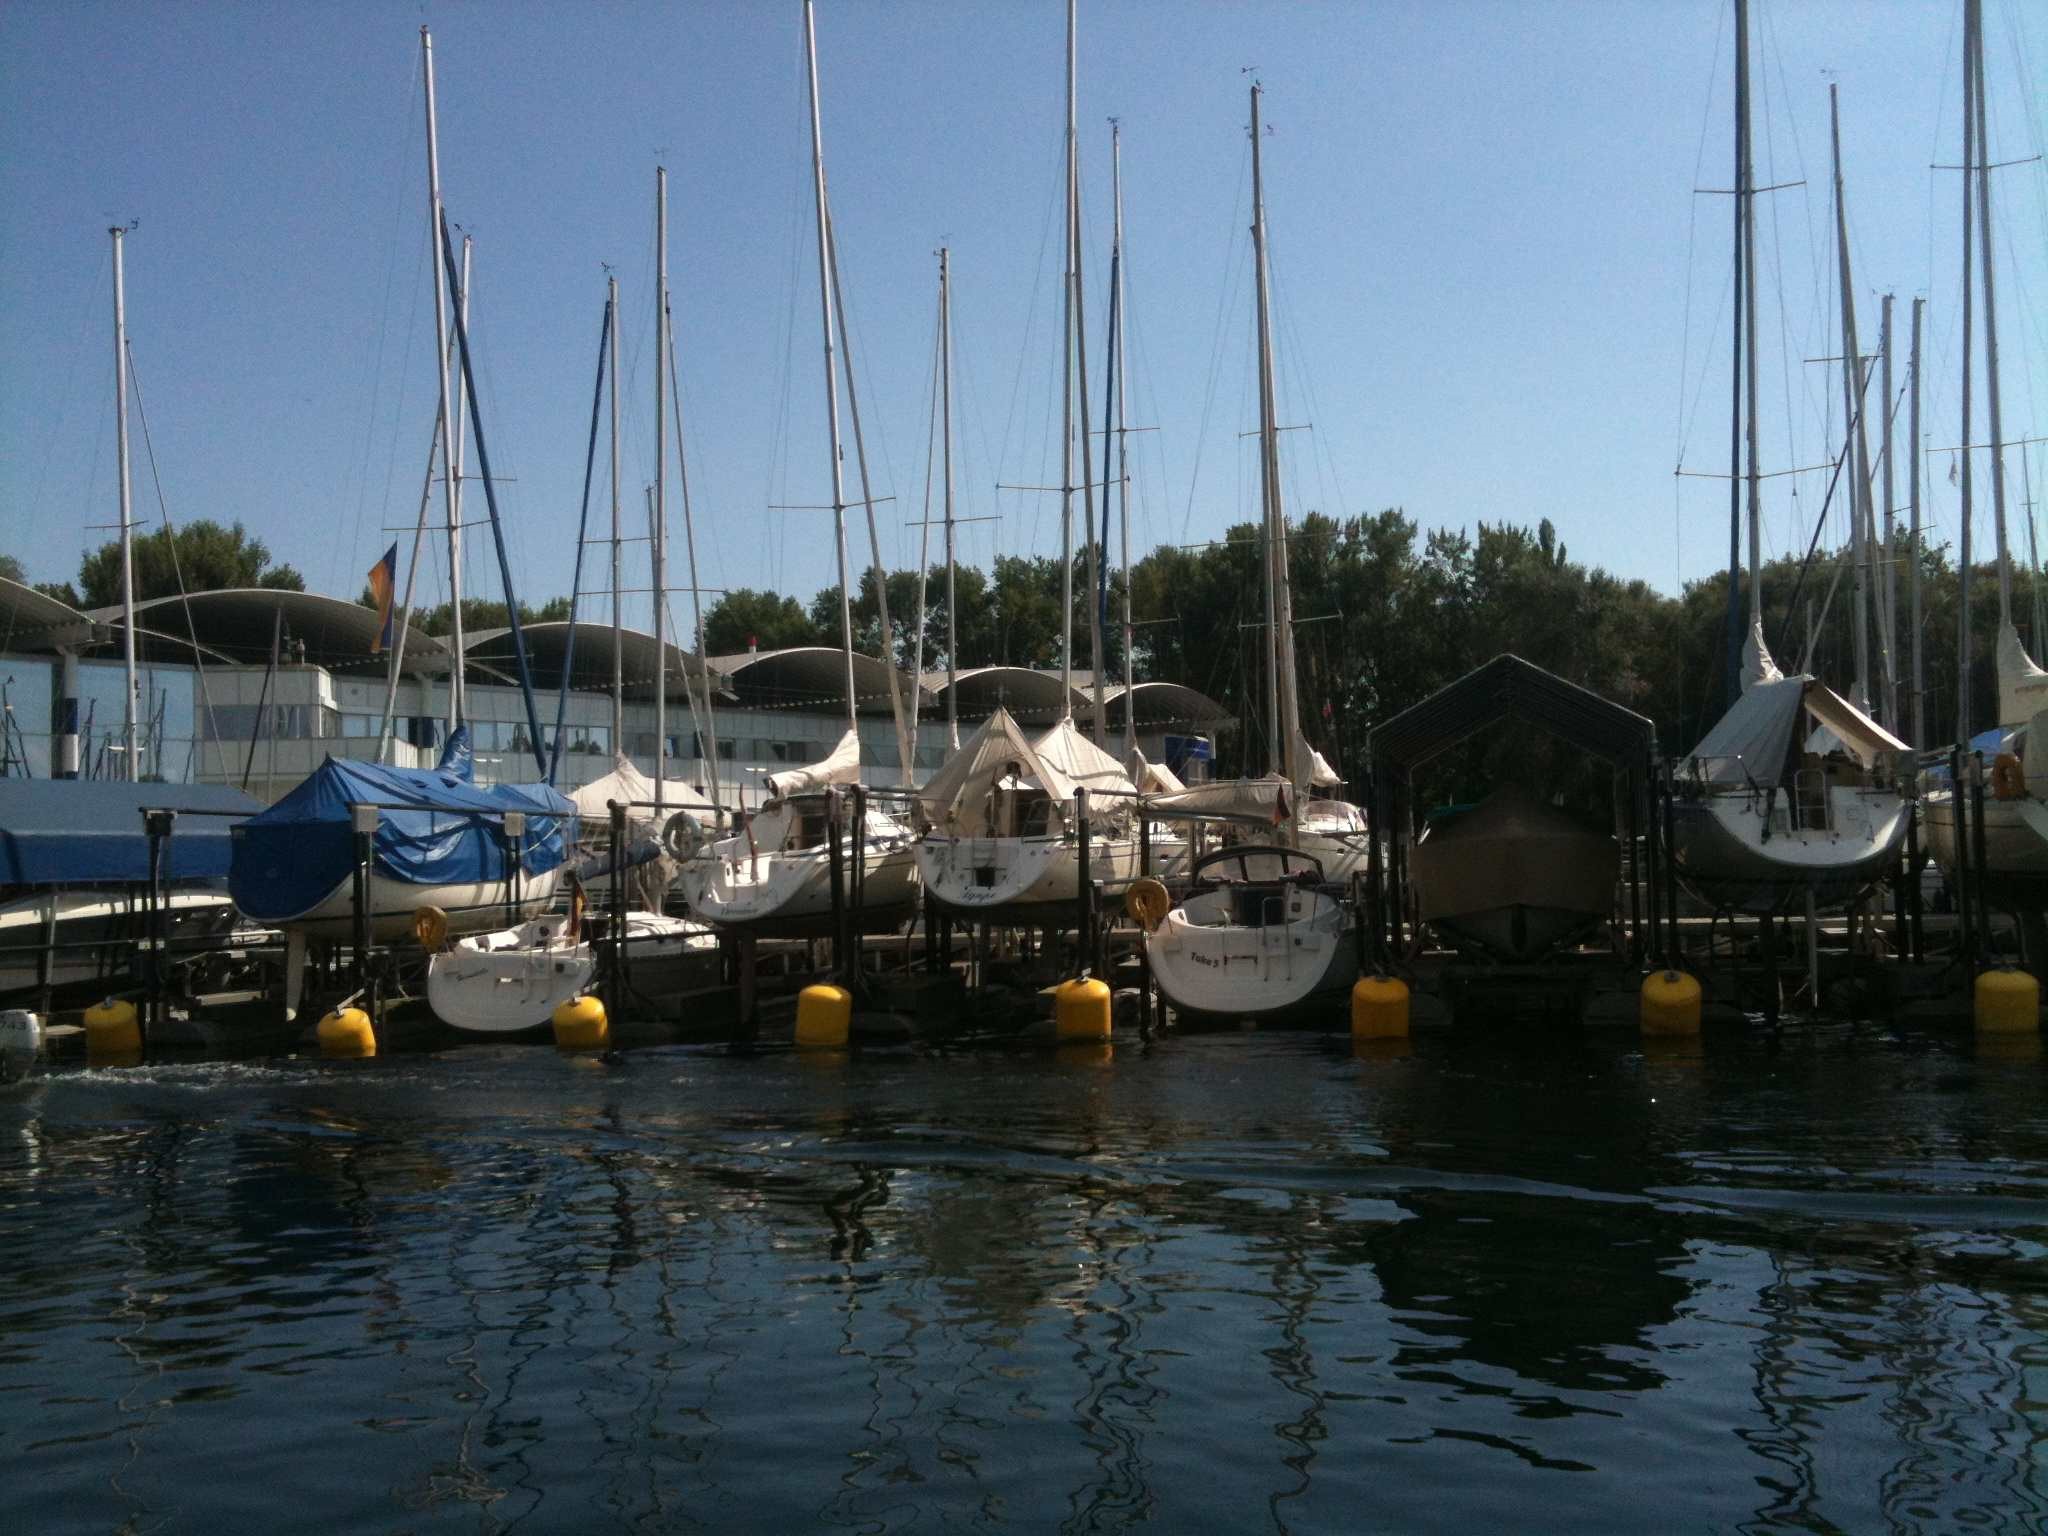 Bootshebeanlagen und Trockenliegeplätze am Bodensee, Kressbronn